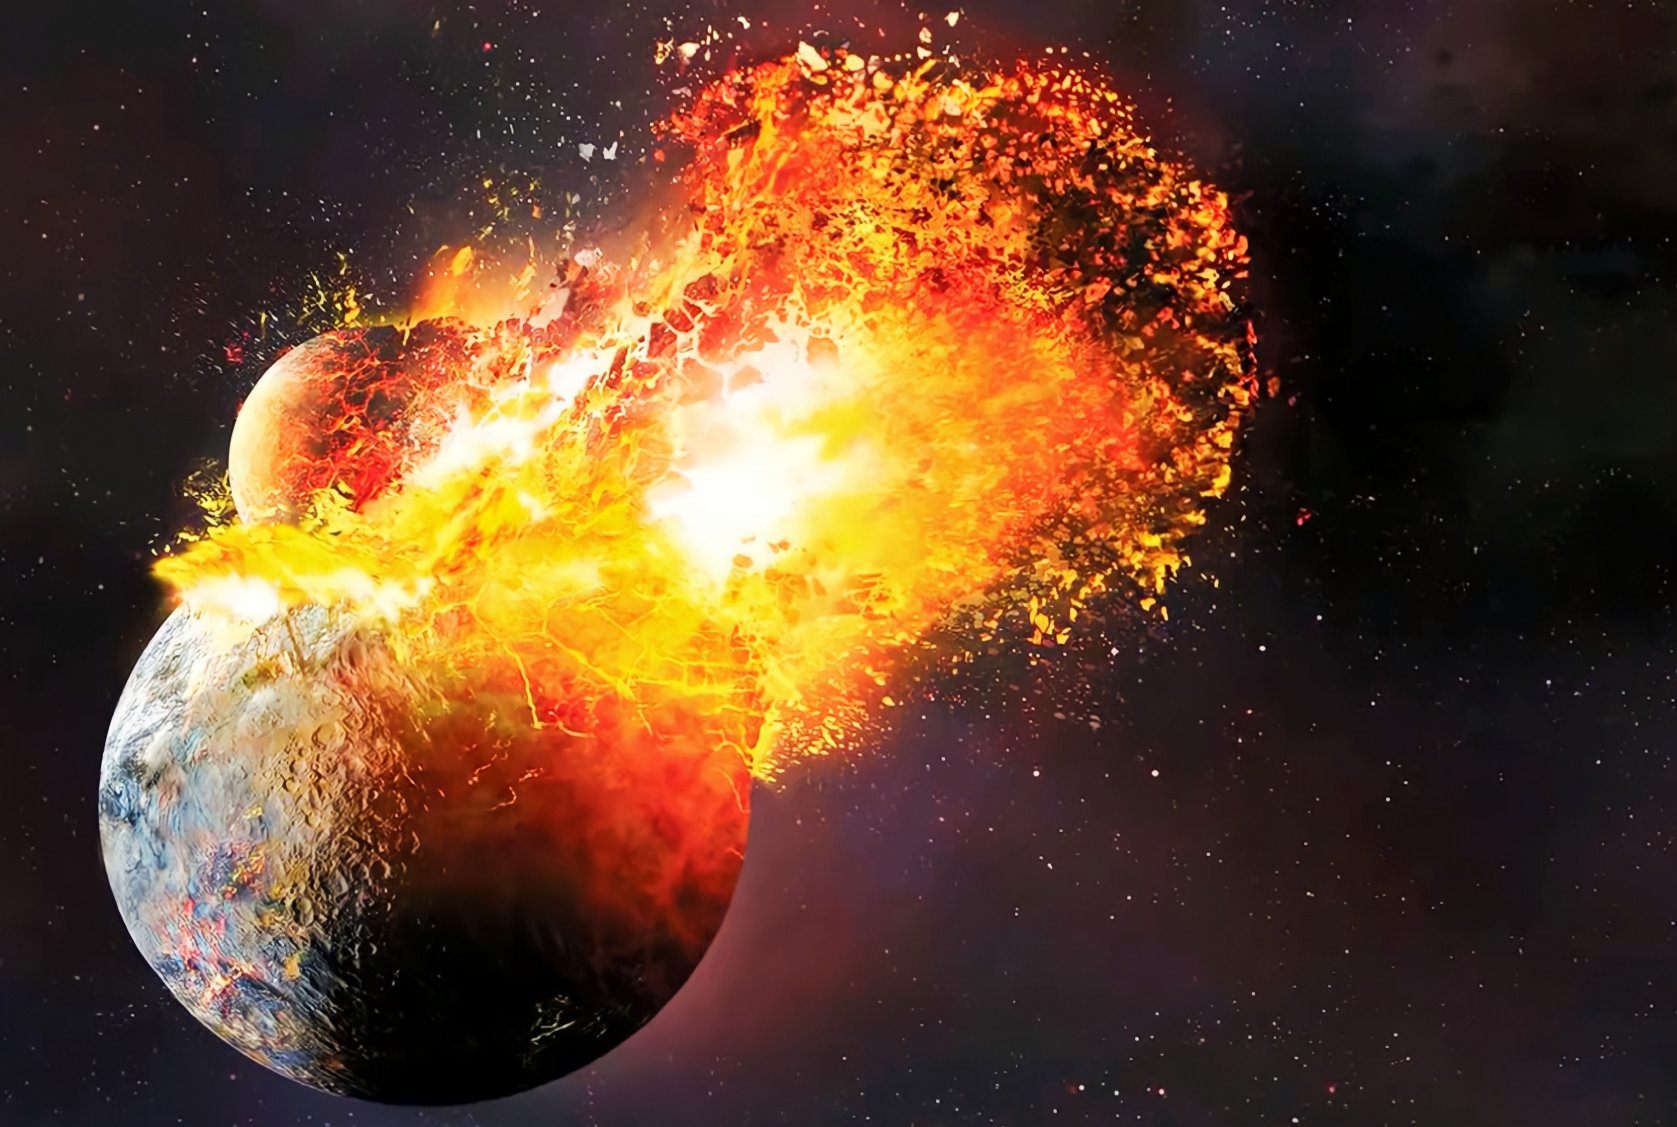 หินอายุ 4 พันล้านปีจากโลกถูกค้นพบบนดวงจันทร์: นักทฤษฎีพูดอะไร? 2